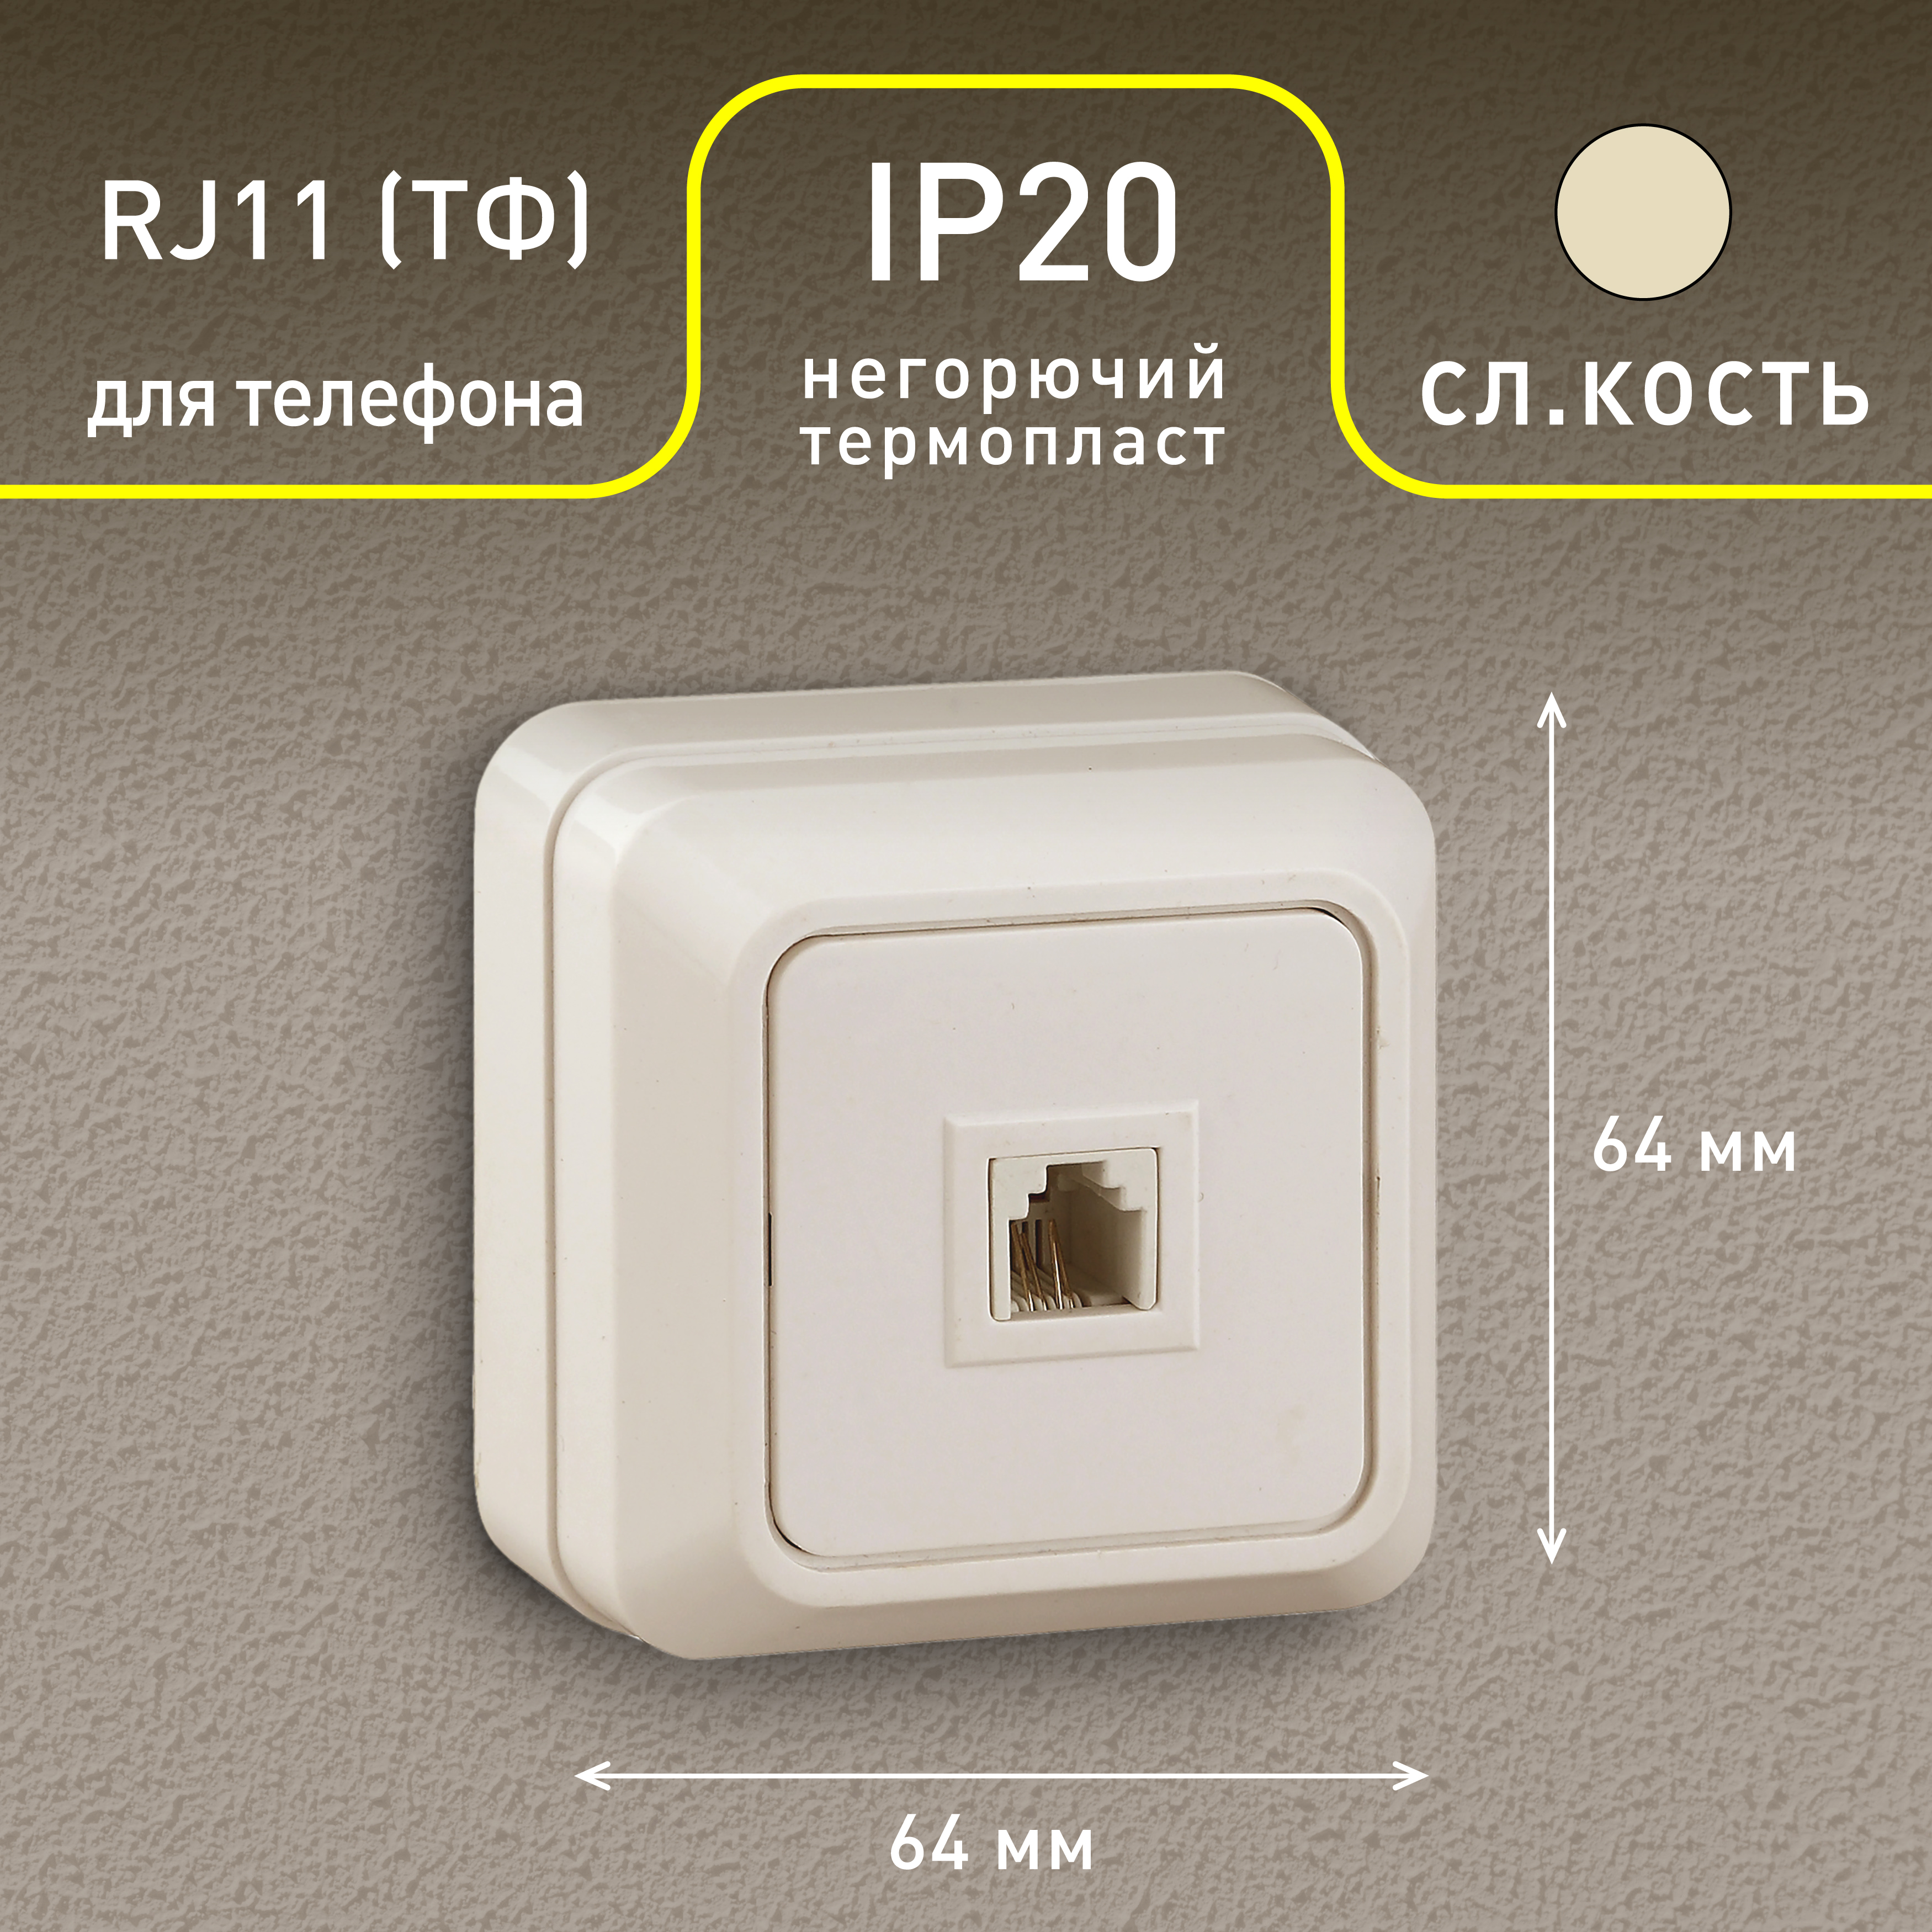 2-302-02 Intro Розетка телефонная RJ11, IP20, ОУ, Quadro, сл.кость (10/200/1600)